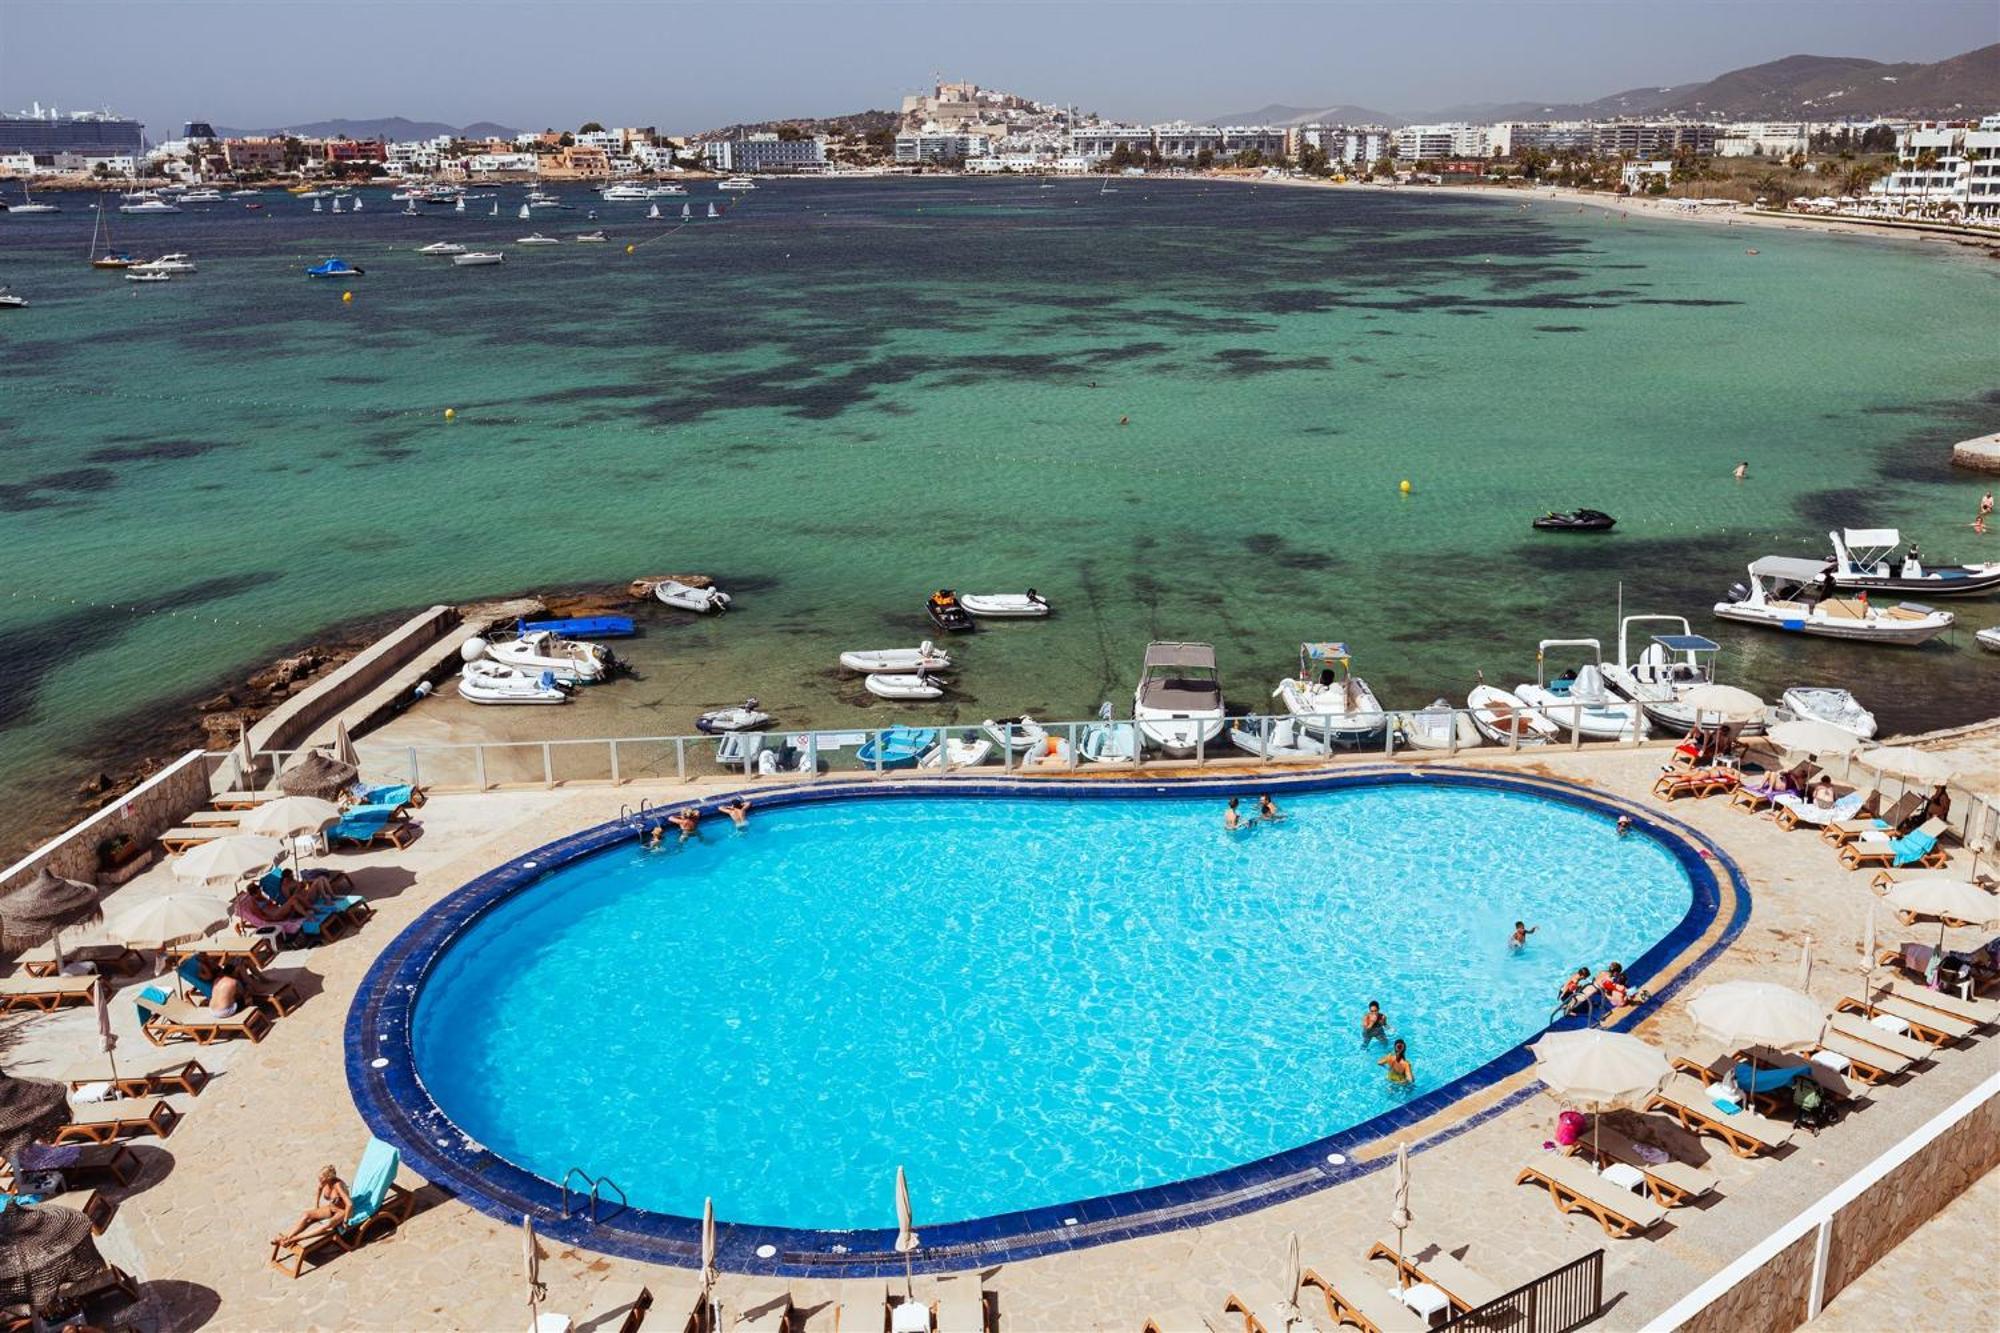 Hotel Simbad Ibiza Exterior photo